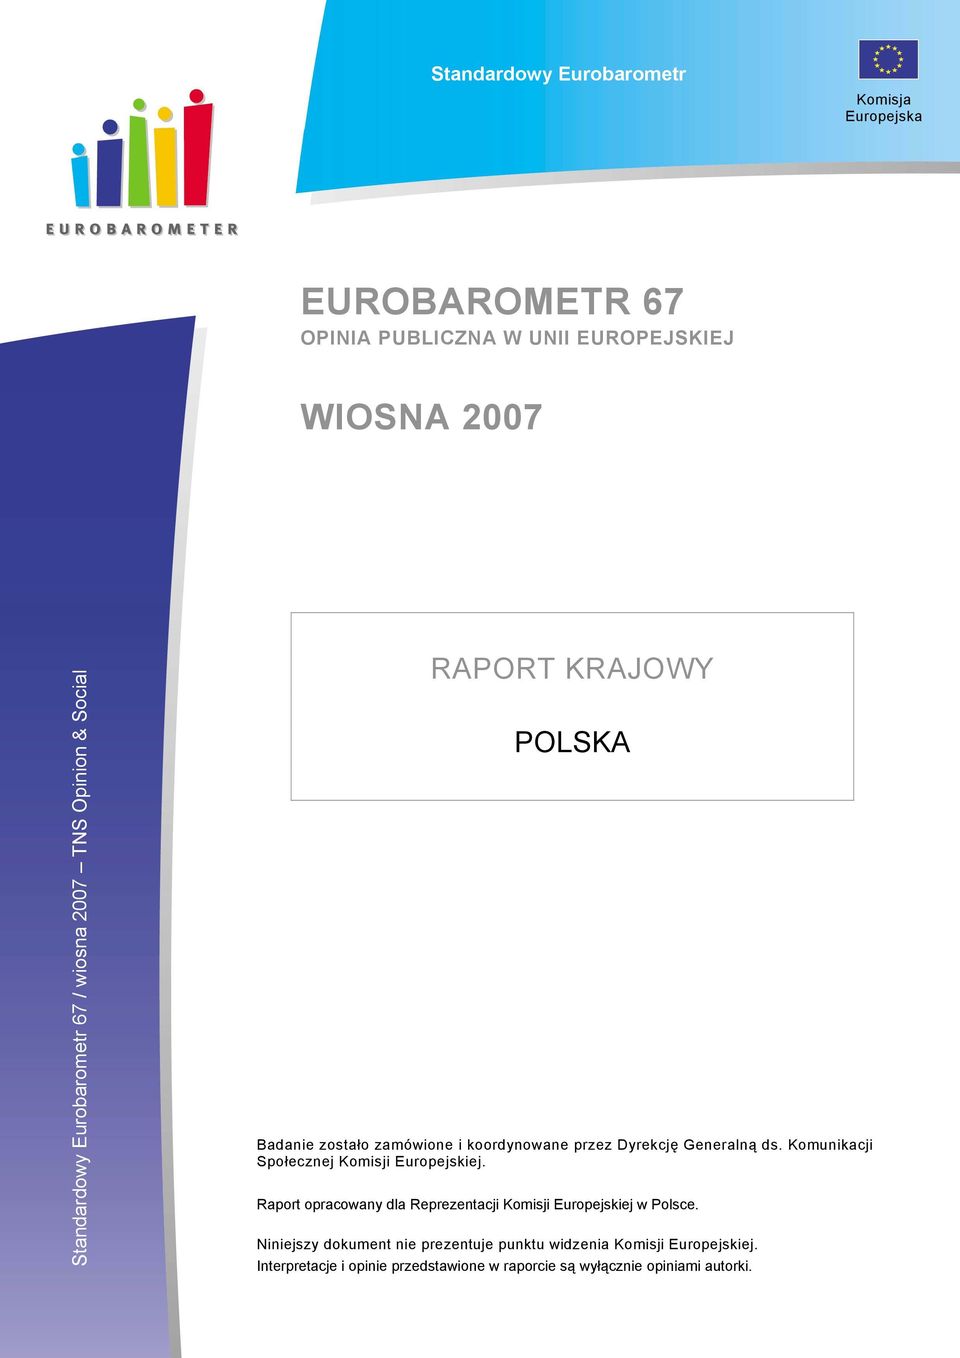 Komunikacji Społecznej Komisji Europejskiej. Raport opracowany dla Reprezentacji Komisji Europejskiej w Polsce.